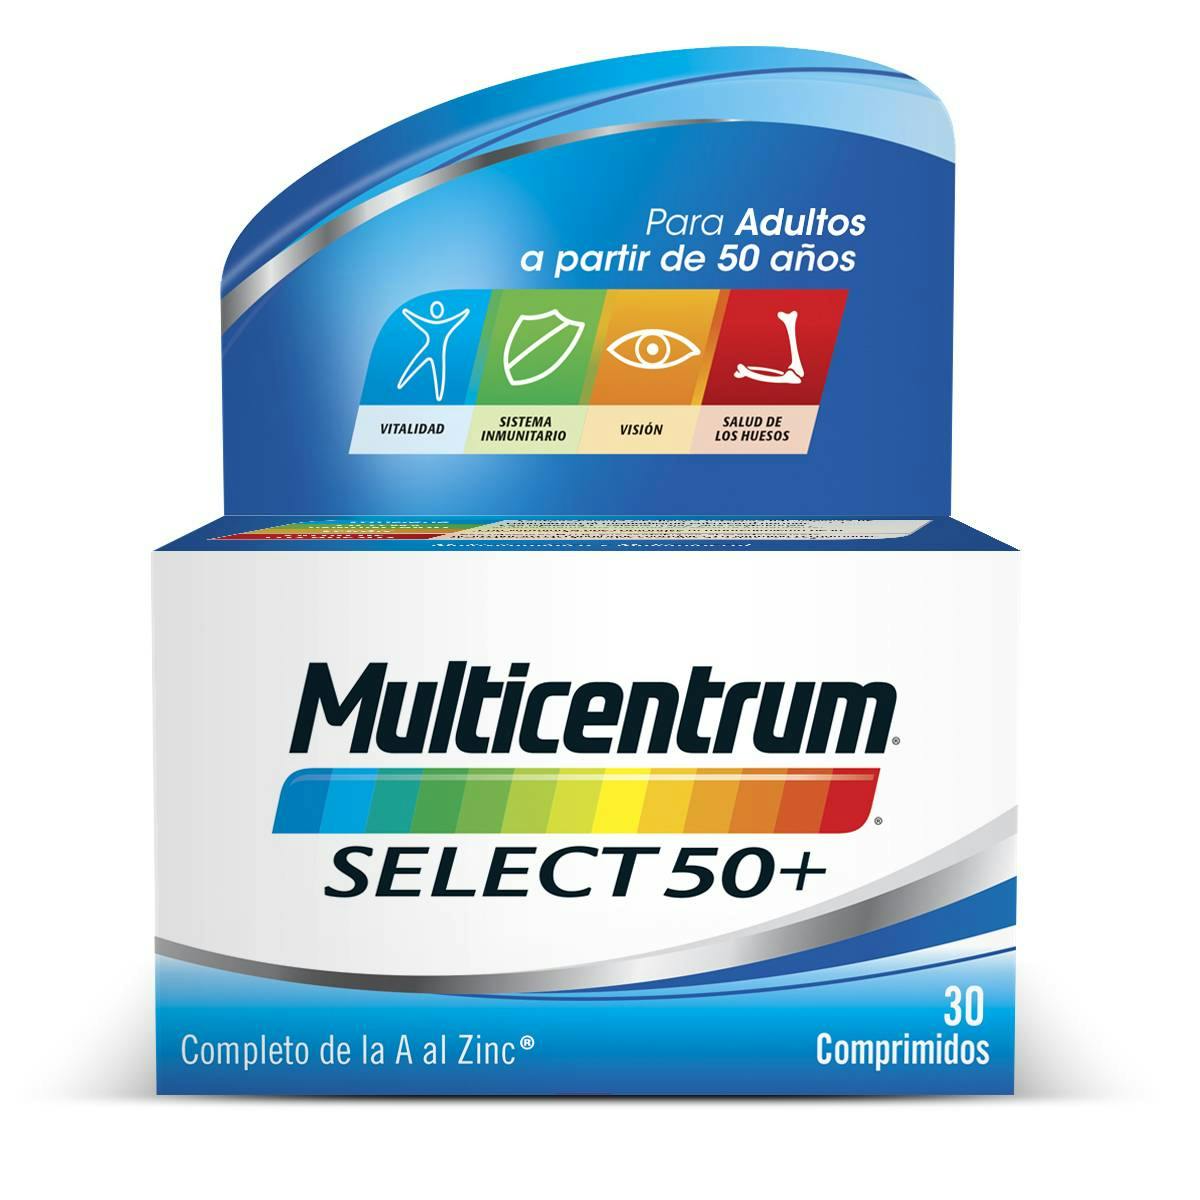 Multivitaminas Select50 + Adultos - Multicentrum 